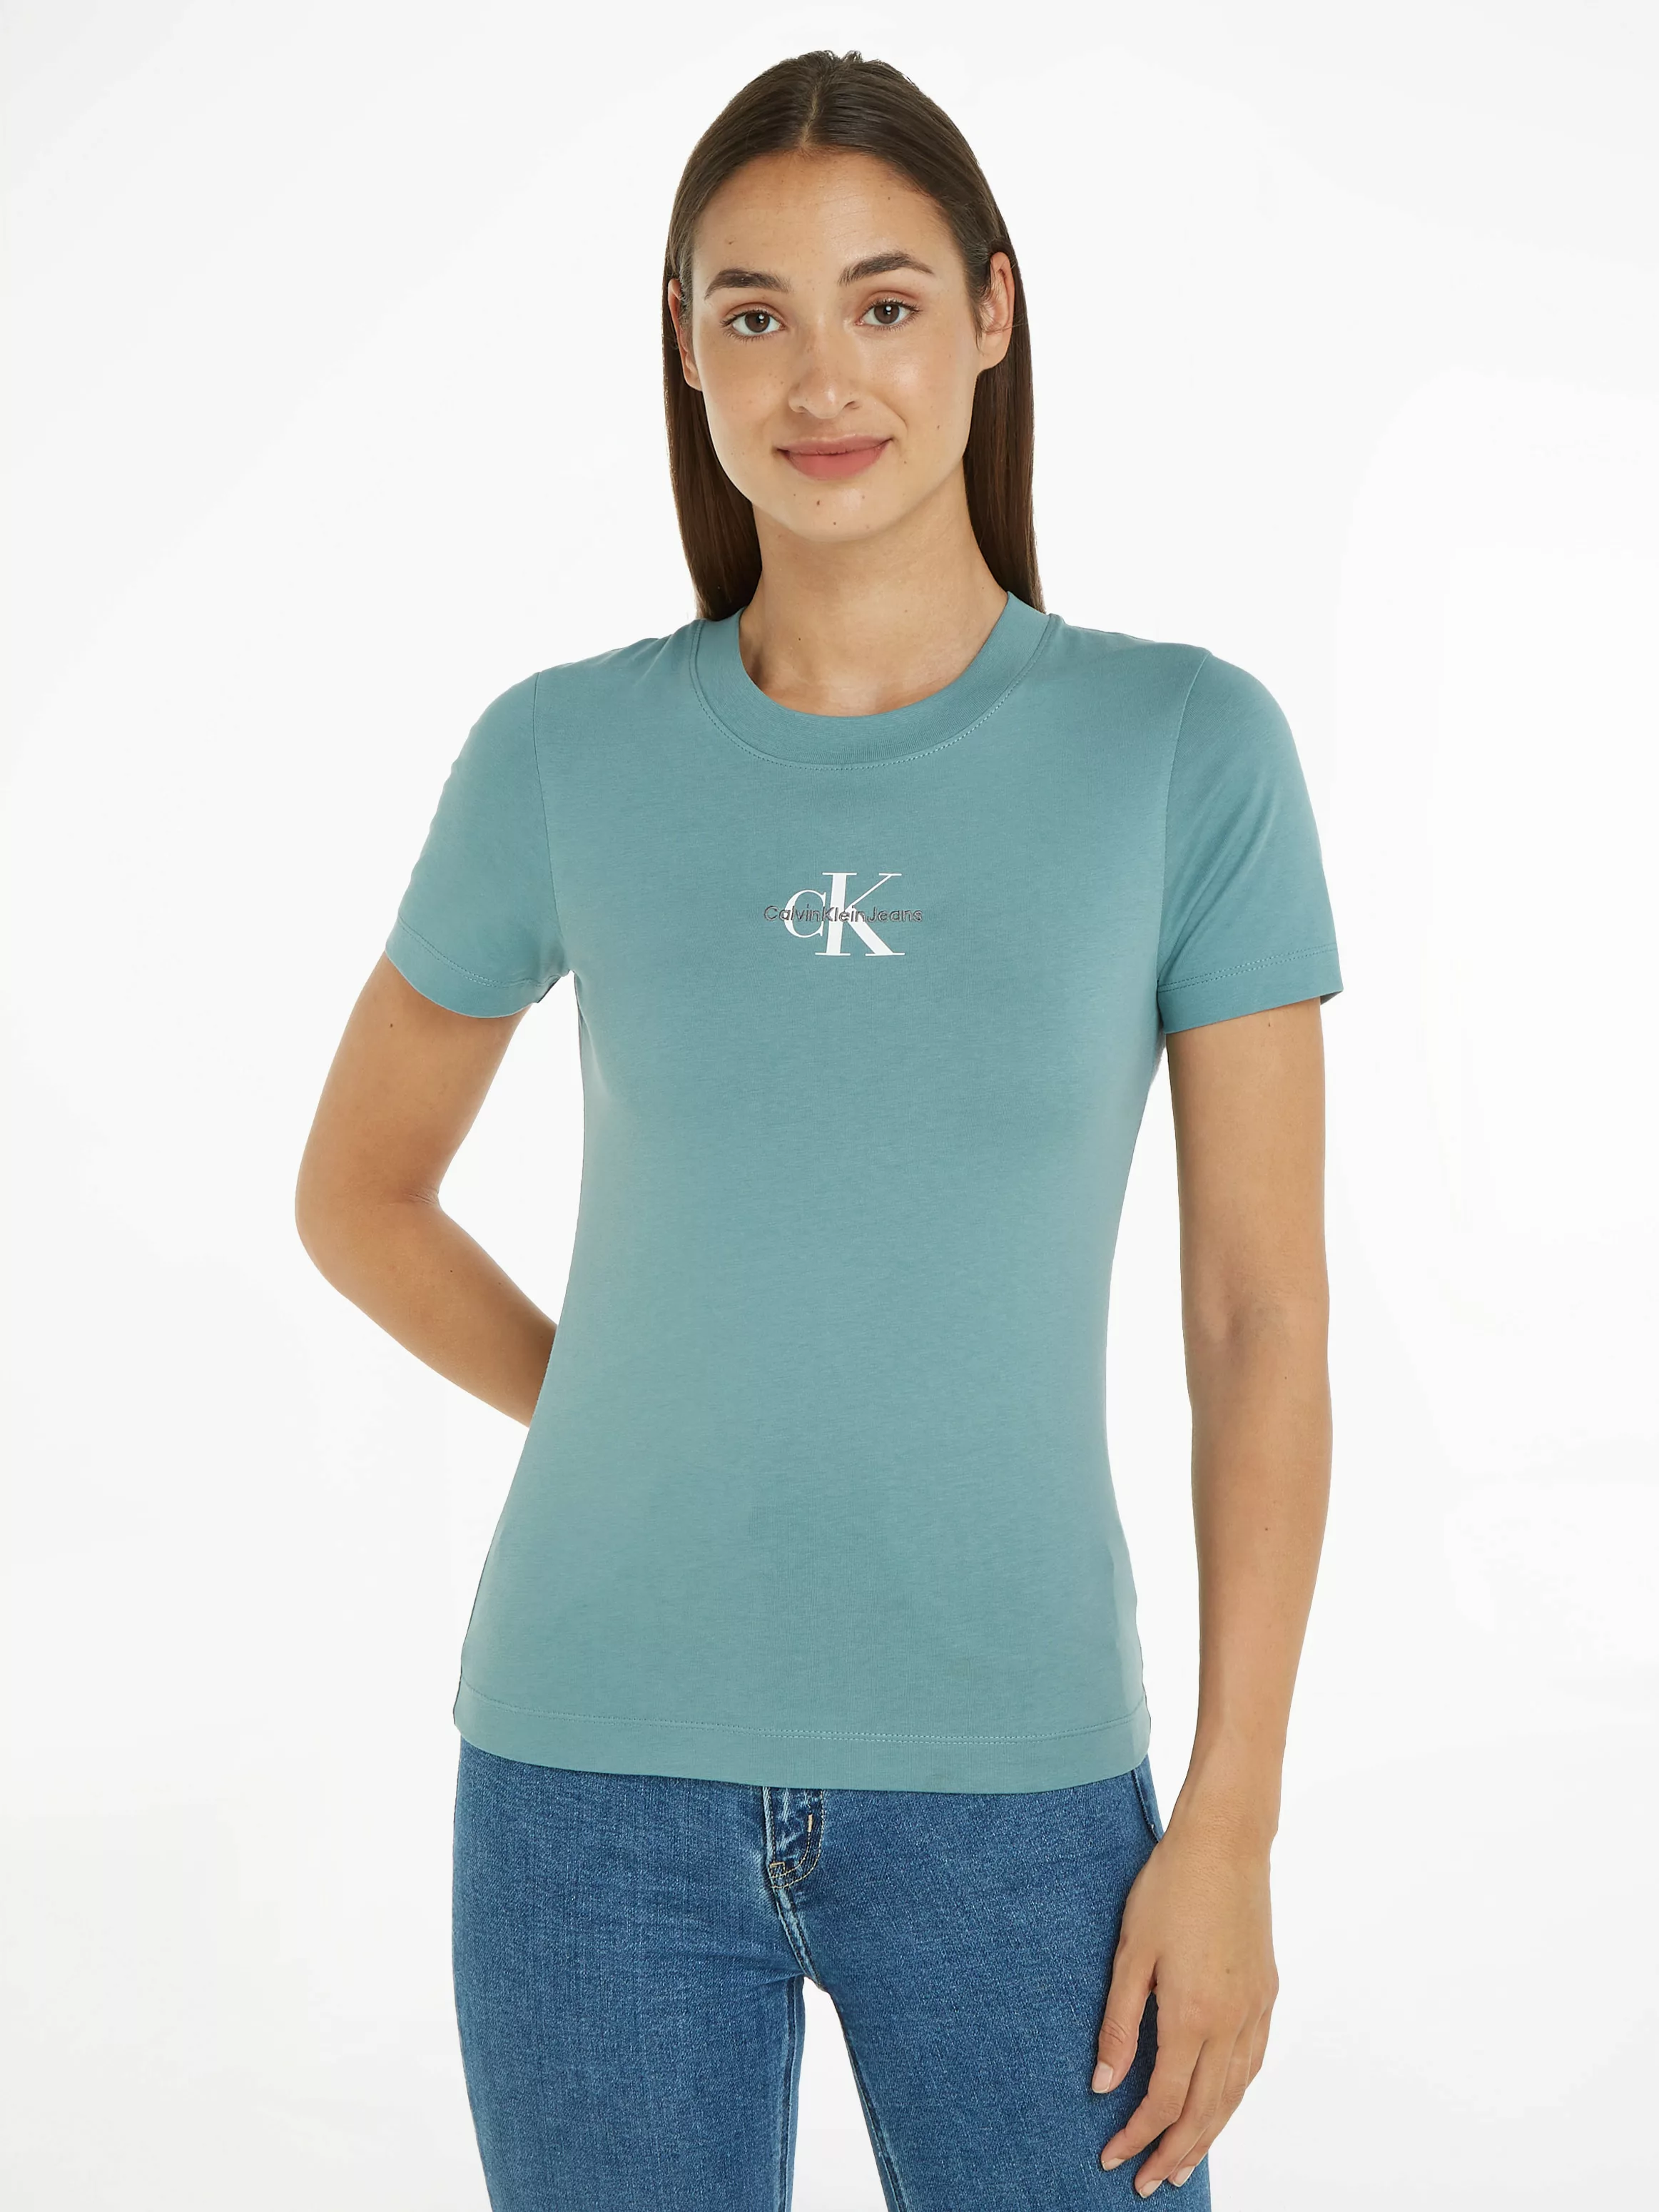 Calvin Klein Jeans T-Shirt MONOLOGO SLIM FIT TEE mit Logodruck günstig online kaufen